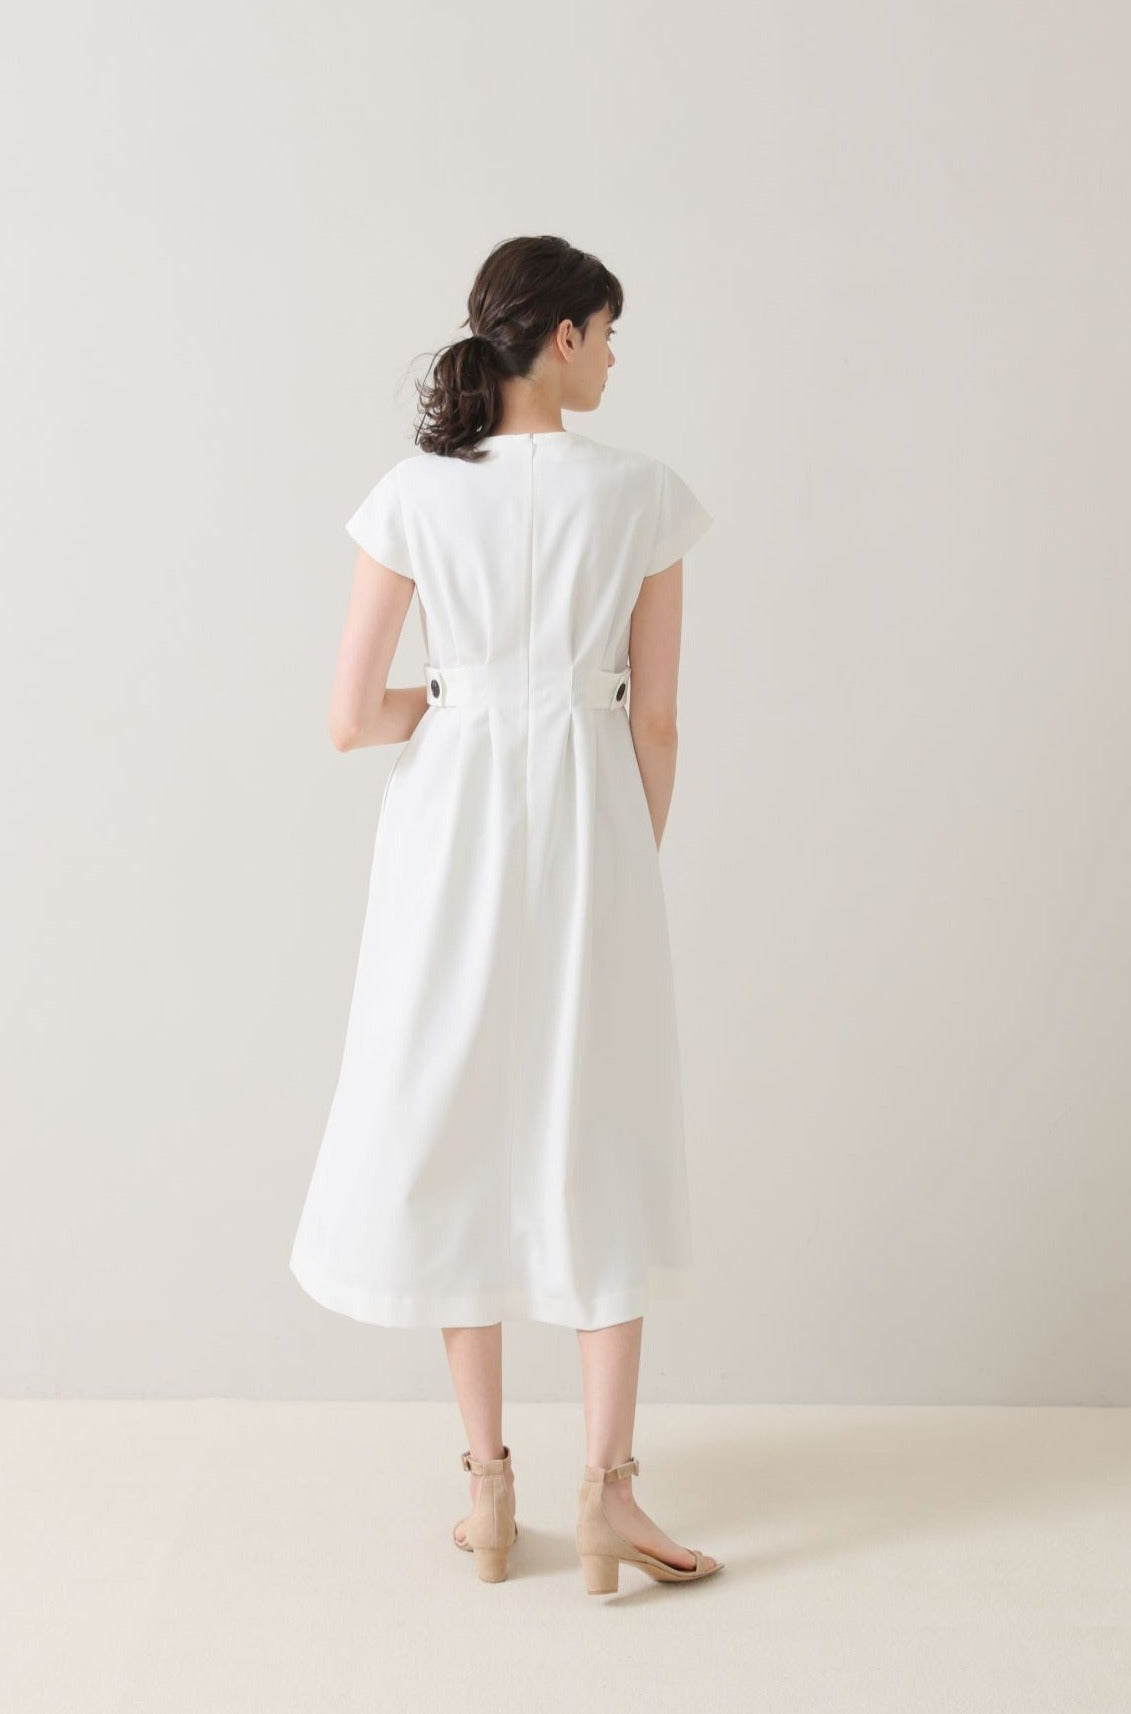 特別価格audire Waist tuck dress(White)S size ワンピース